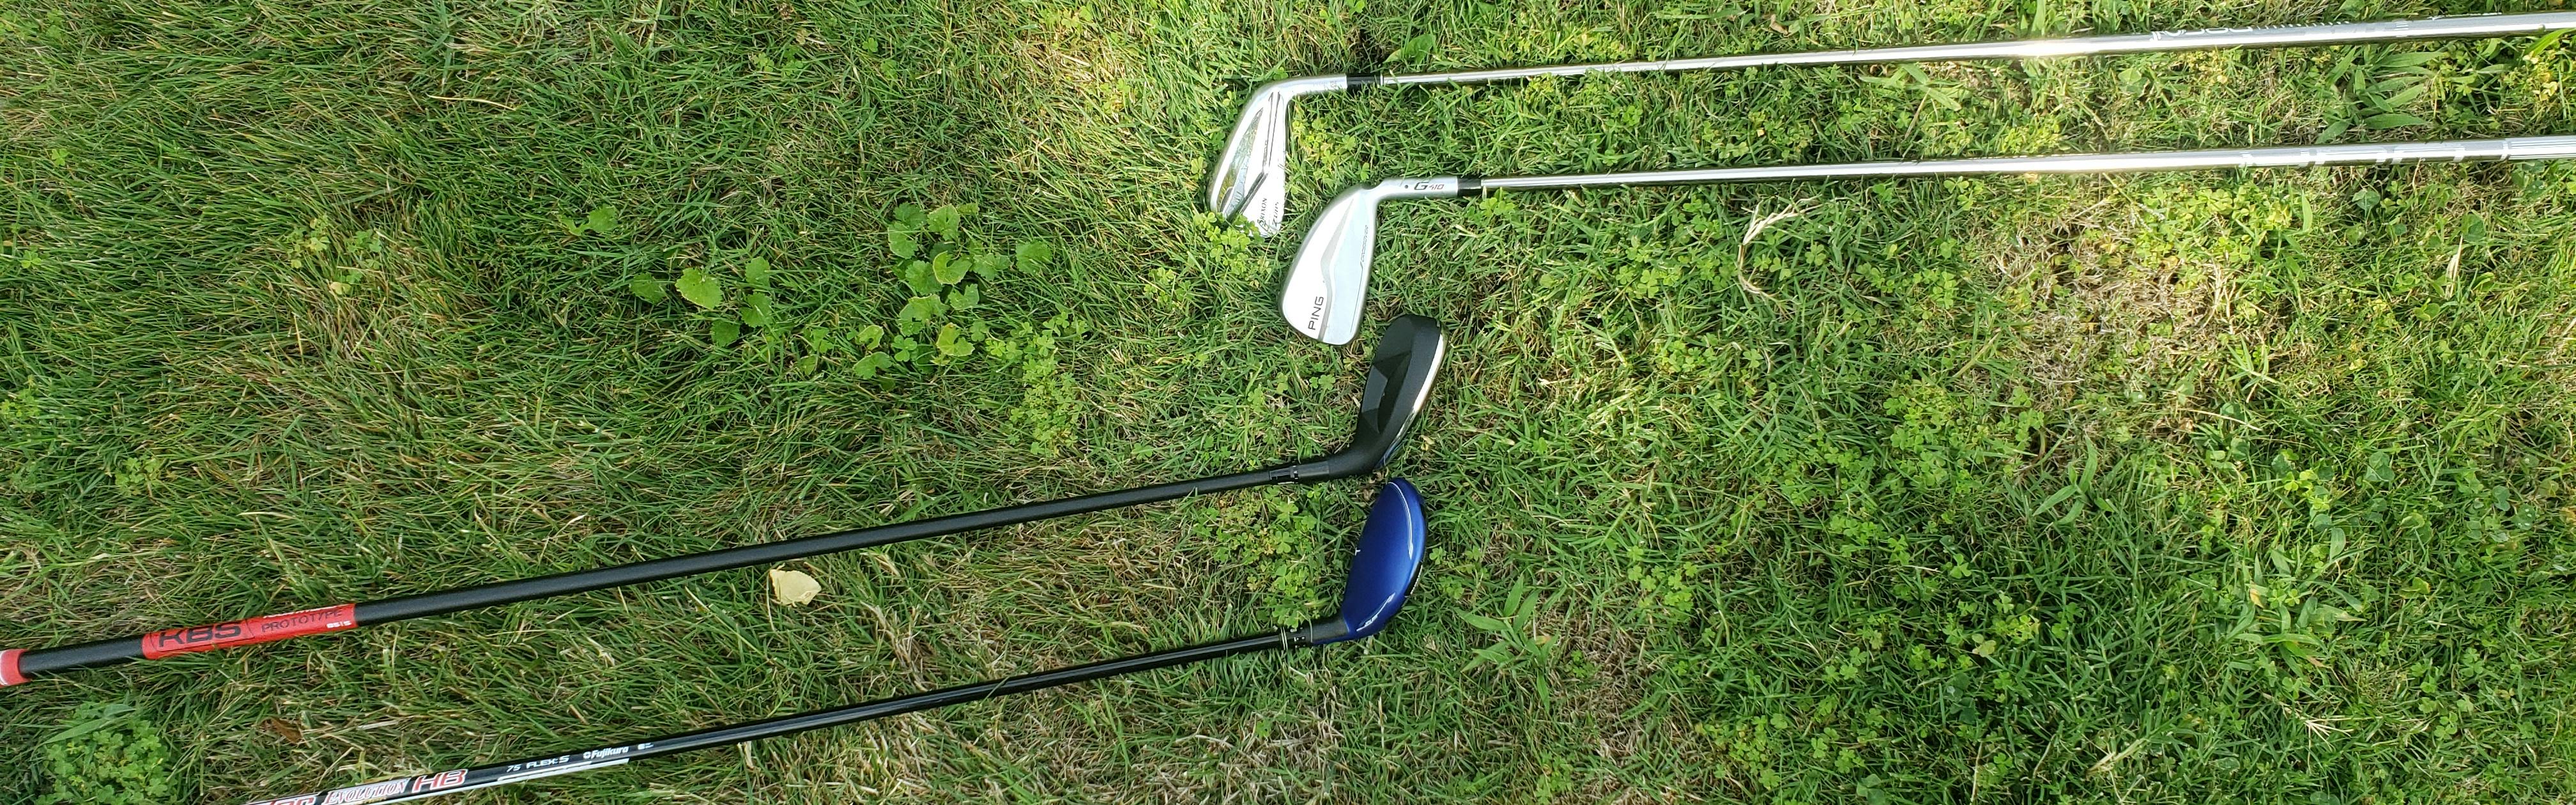 Four golf clubs lie on the grass